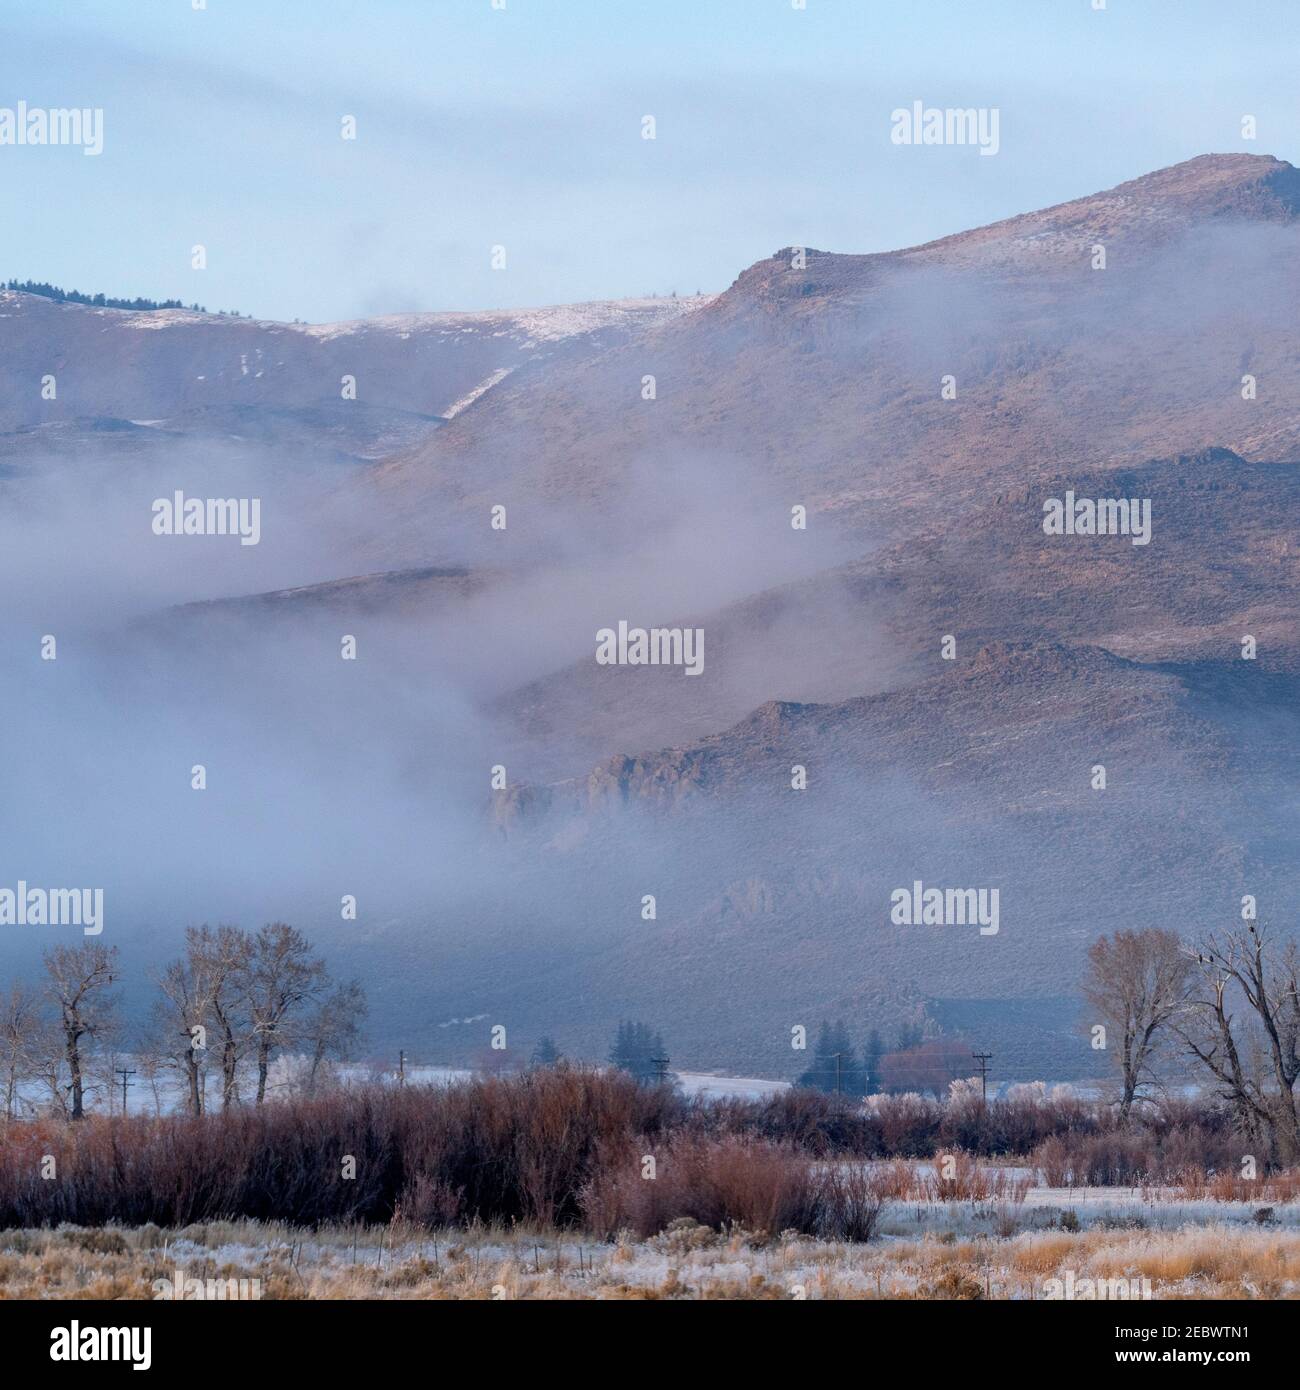 Etats-Unis, Idaho, Bellevue, paysage d'hiver avec montagnes dans le brouillard Banque D'Images